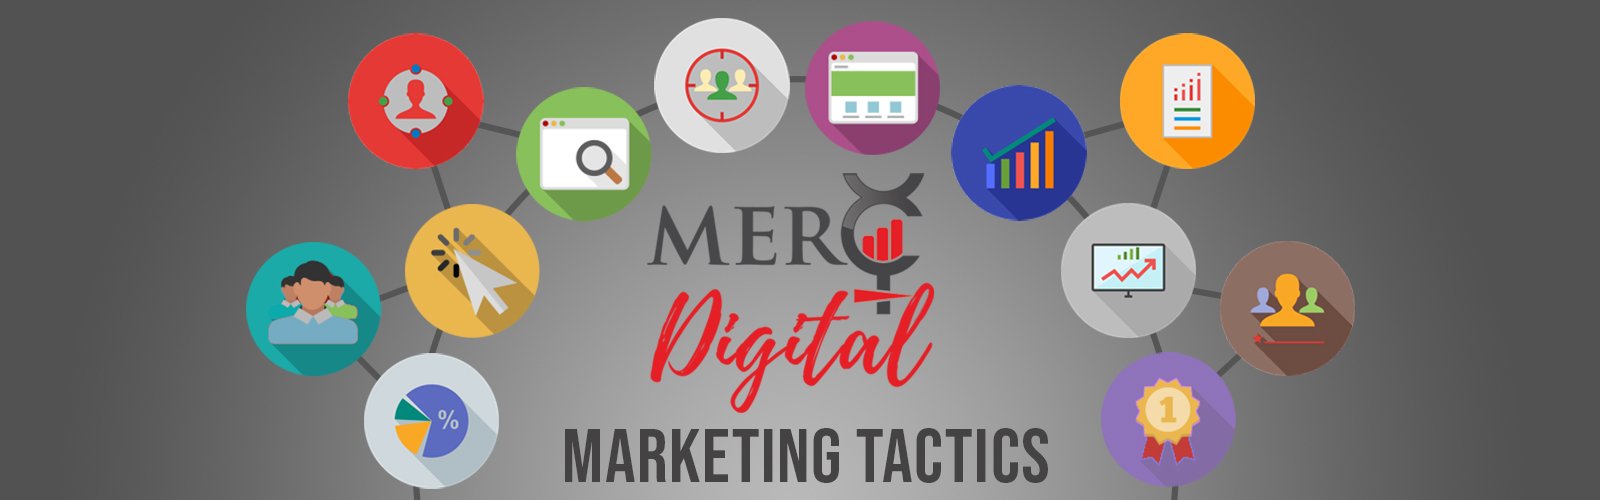 Digital Marketing Tools & Tactics